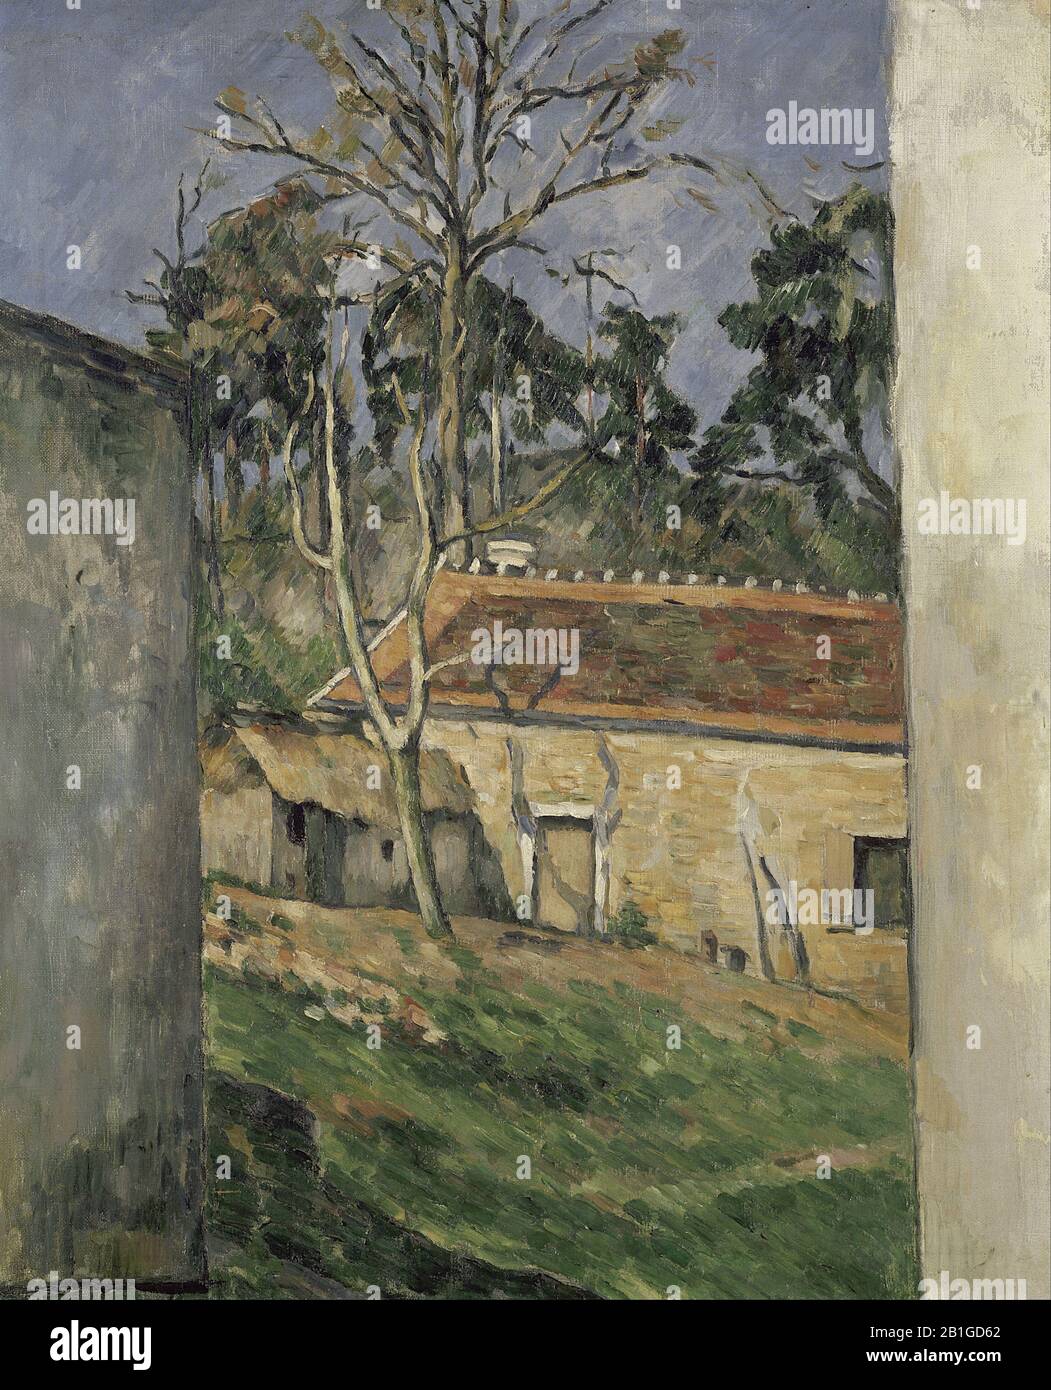 - Pittura 19th Secolo di Paul Cézanne - immagine Ad Altissima risoluzione e qualità Foto Stock